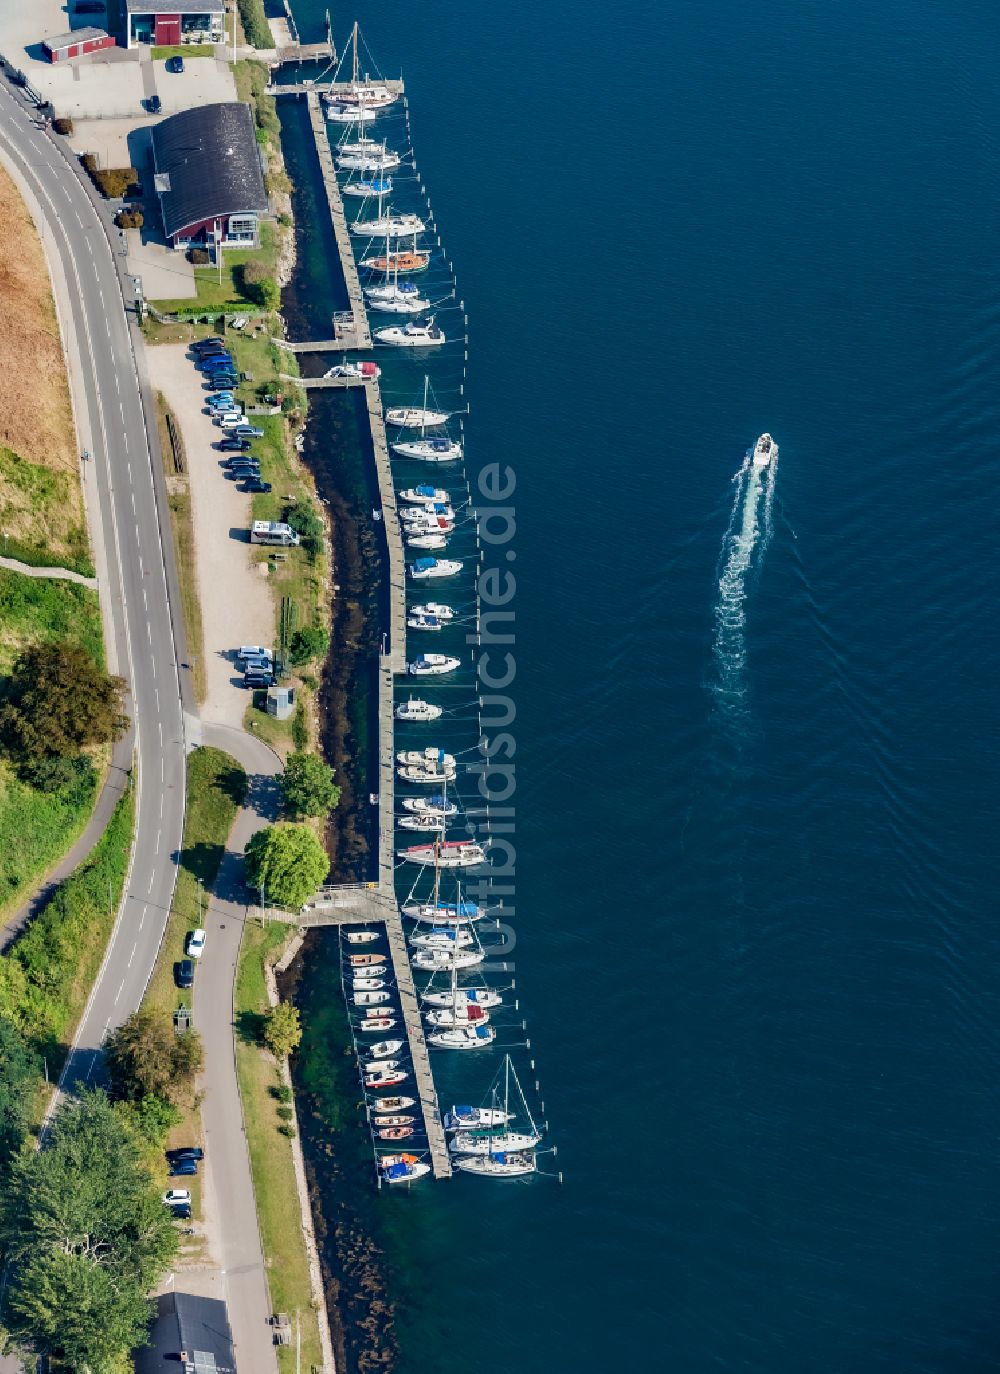 Sonderborg von oben - Sportboot- Anlegestelle am Uferbereich der Meerenge Alssund in Sonderborg in Region Syddanmark, Dänemark